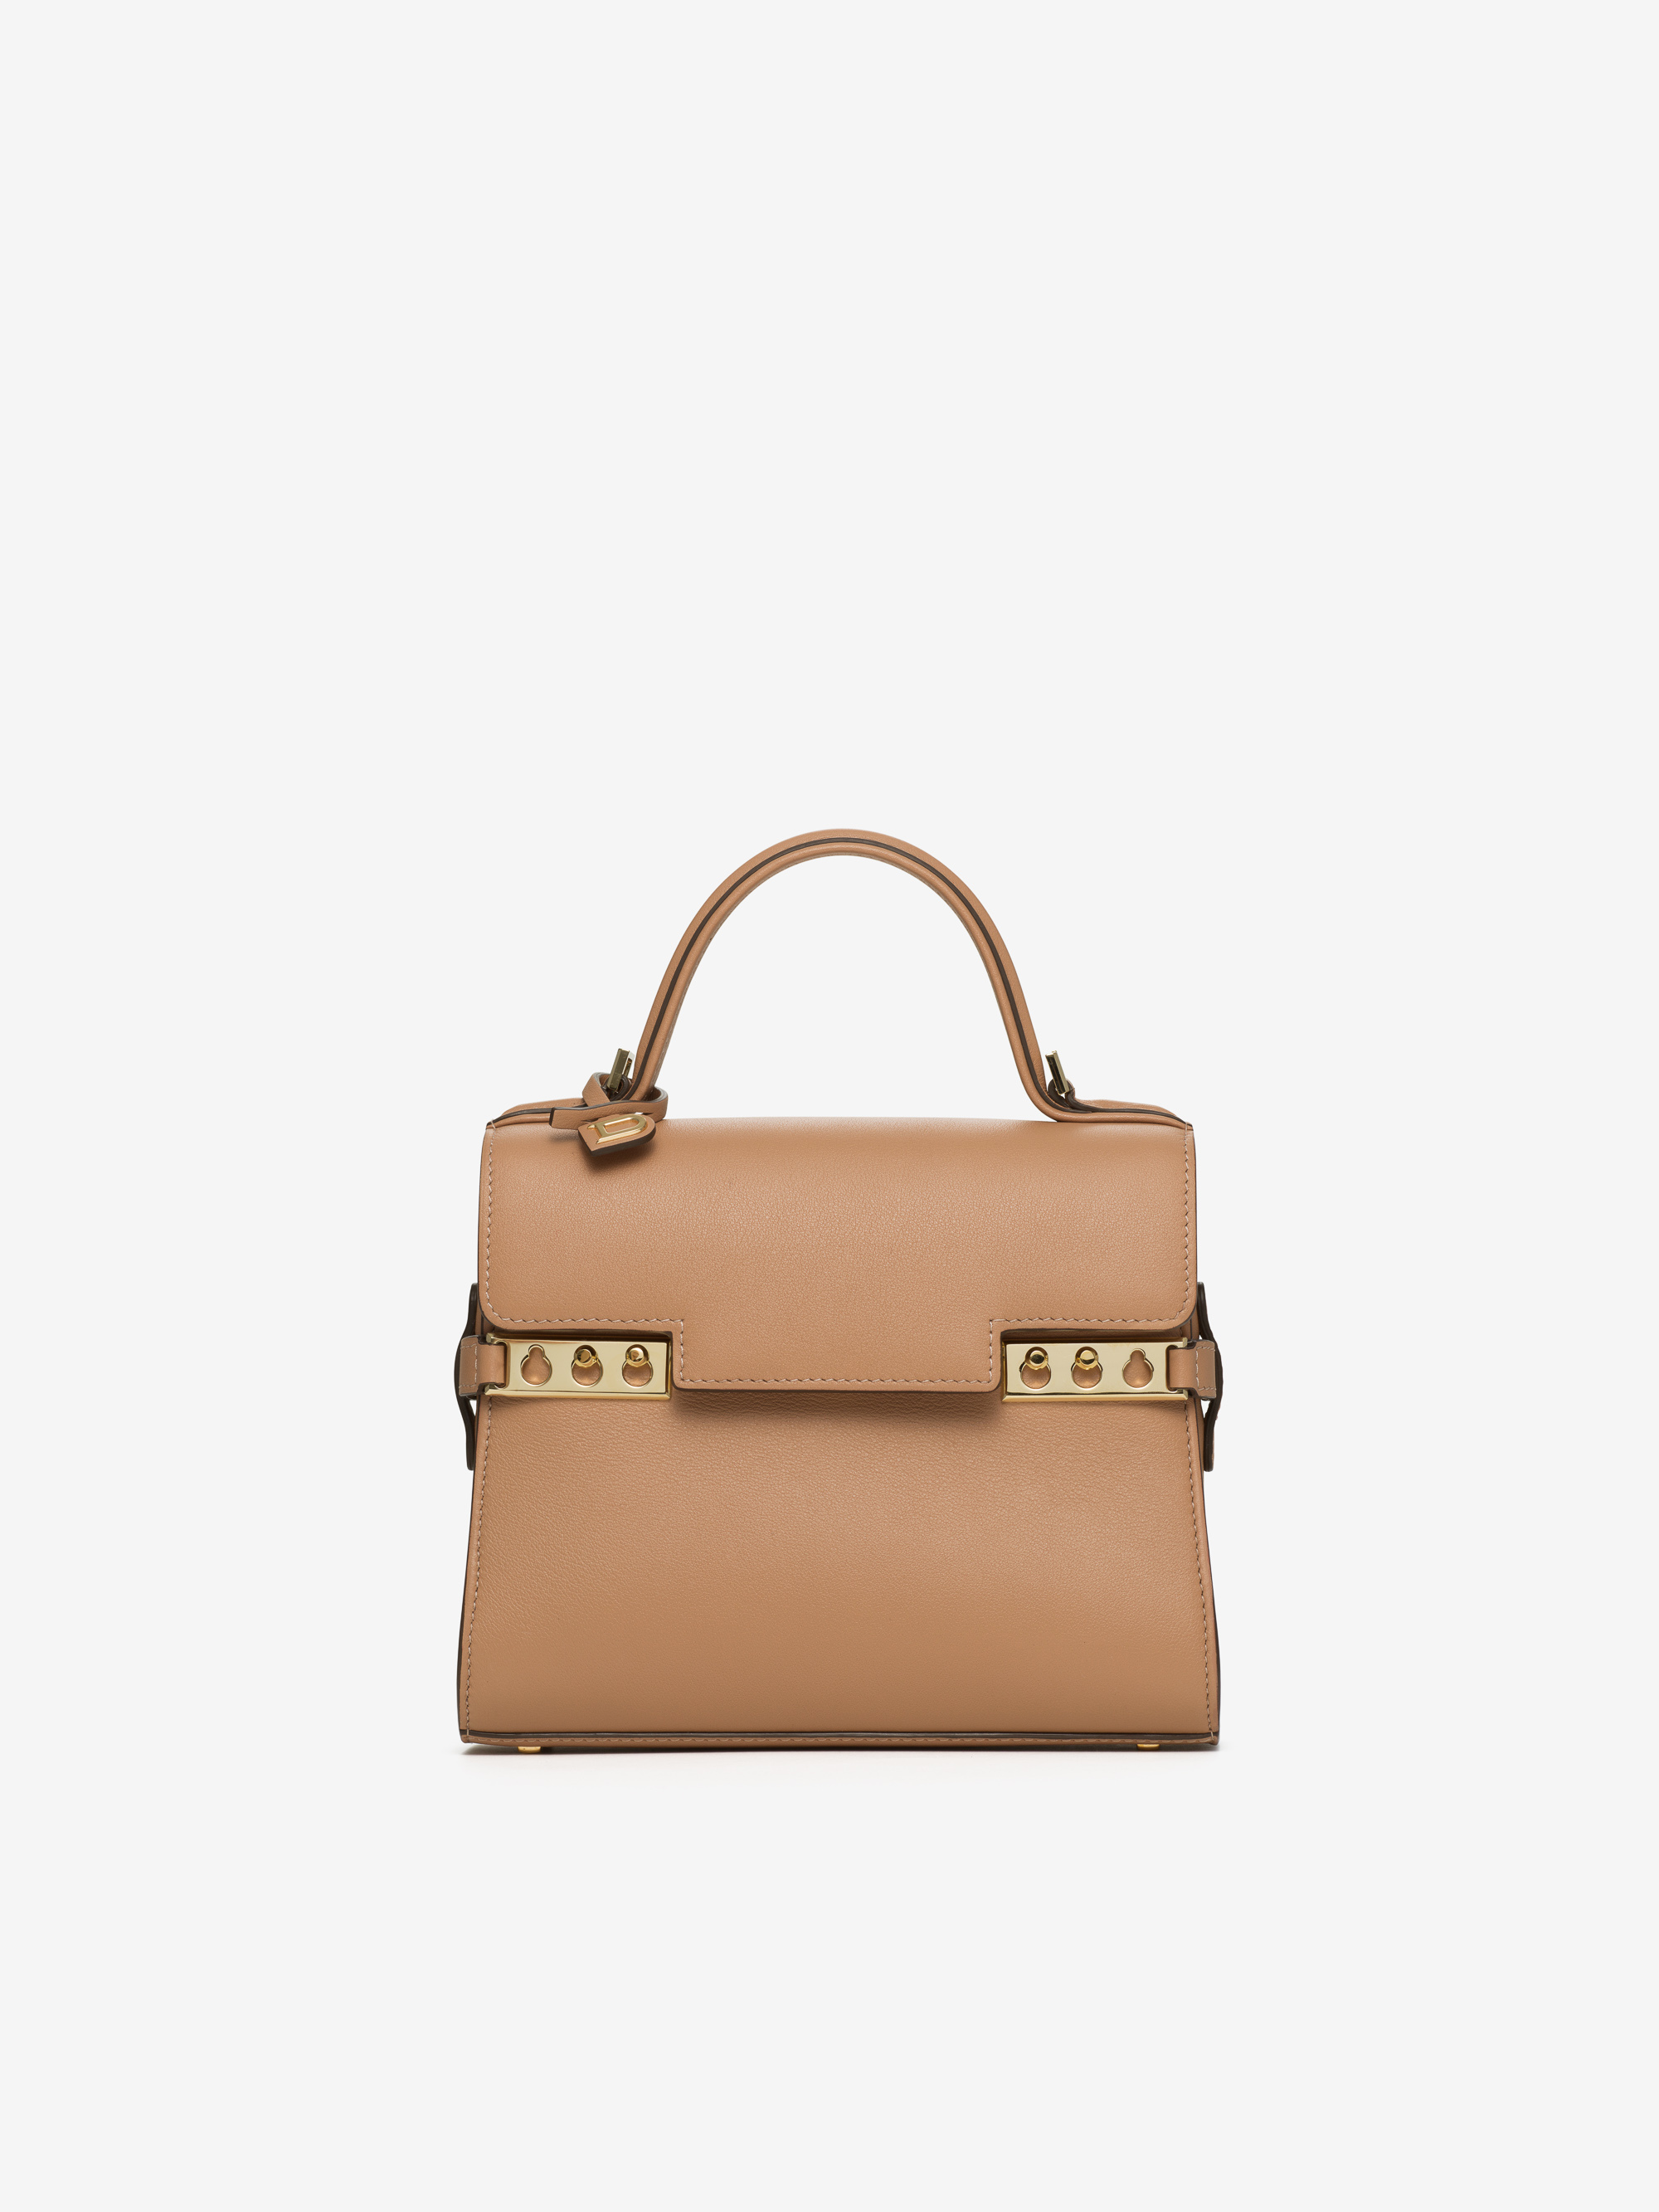 Handbags | Delvaux